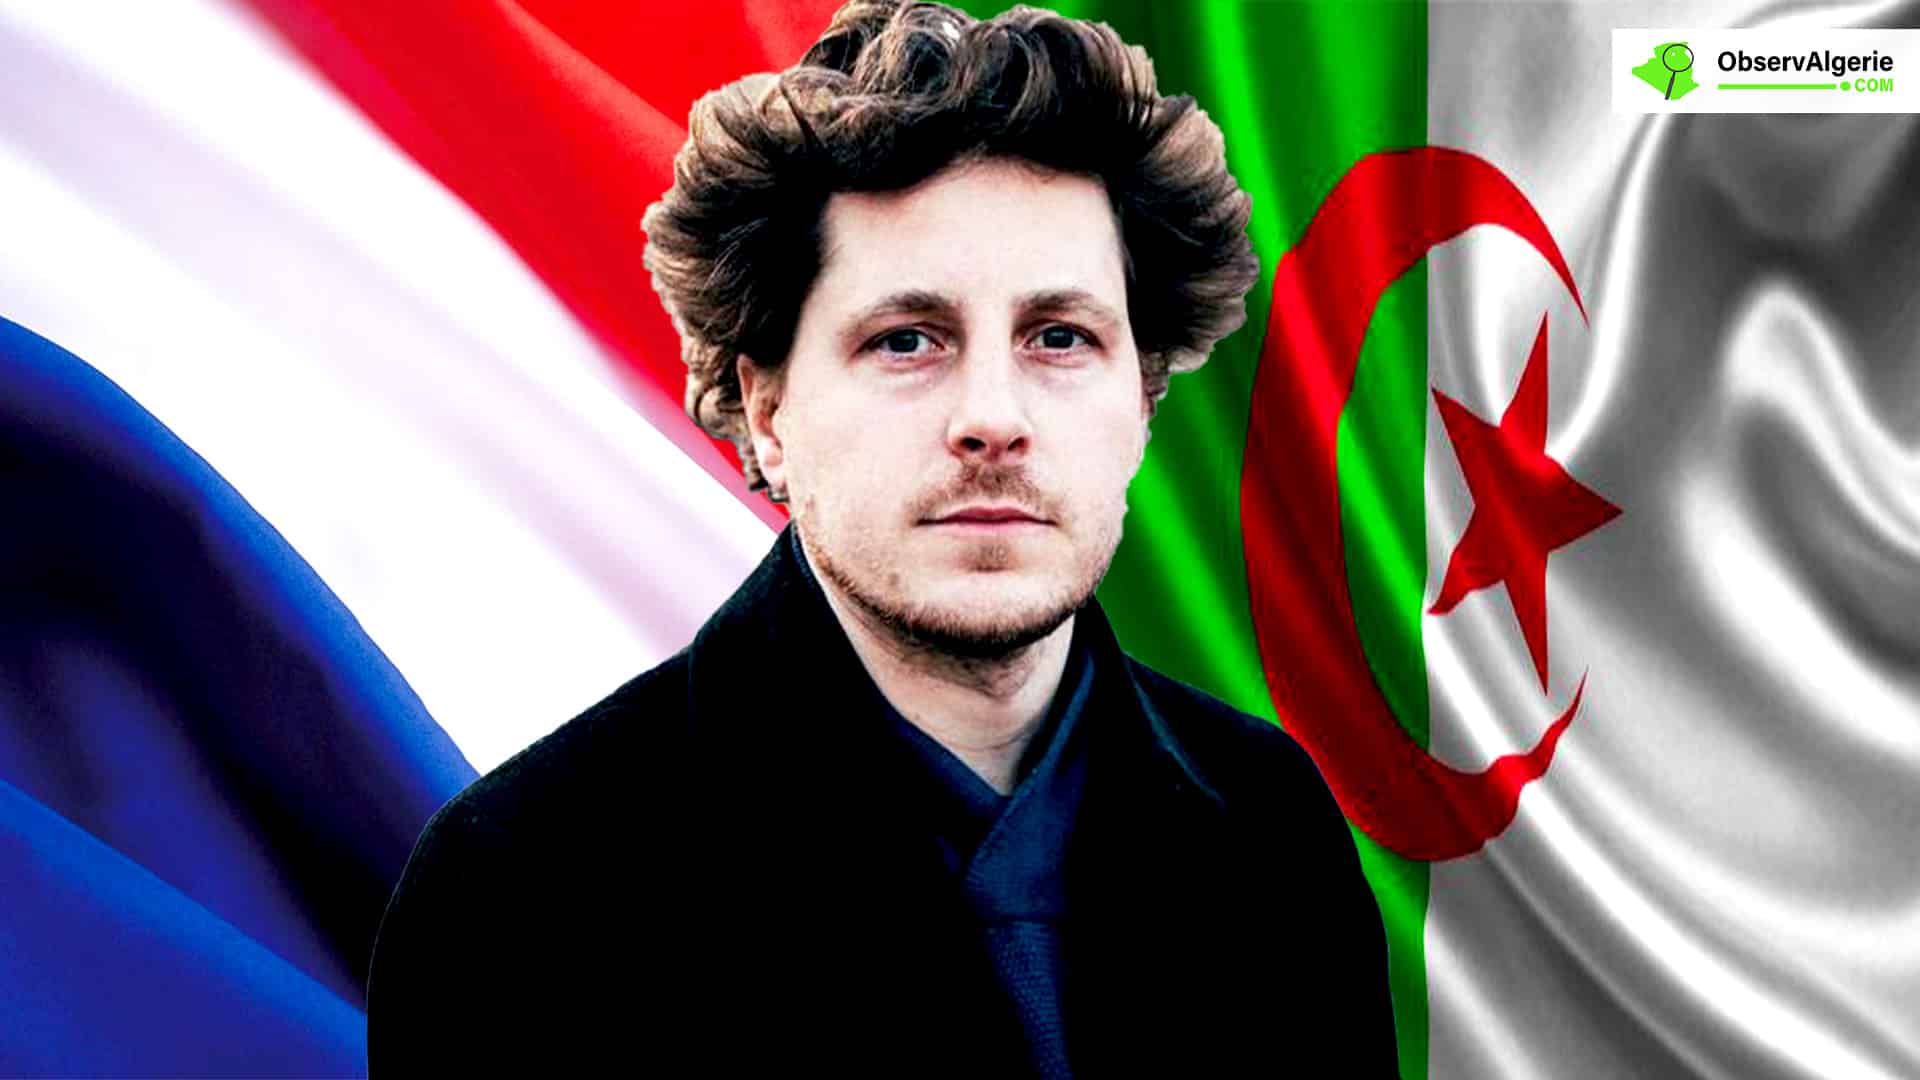 Montage : Julien Bayou, nouveau patron du parti, Europe Ecologie-Les Verts sur fond des drapeaux d’Algérie et de France